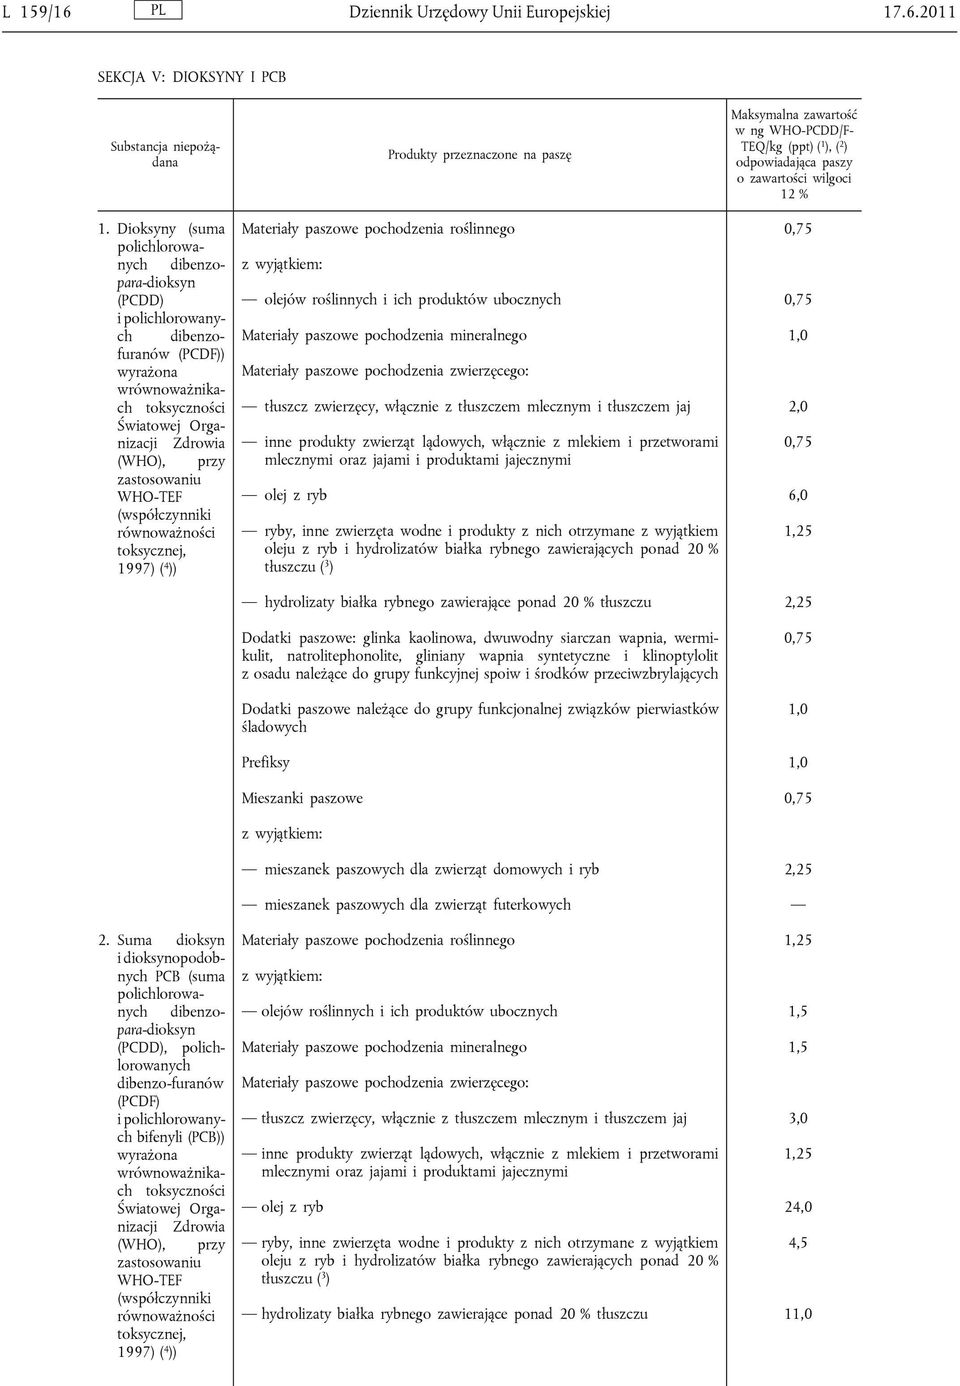 WHO-TEF (współczynniki równoważności toksycznej, 1997) ( 4 )) Materiały paszowe pochodzenia roślinnego 0,75 olejów roślinnych i ich produktów ubocznych 0,75 Materiały paszowe pochodzenia mineralnego